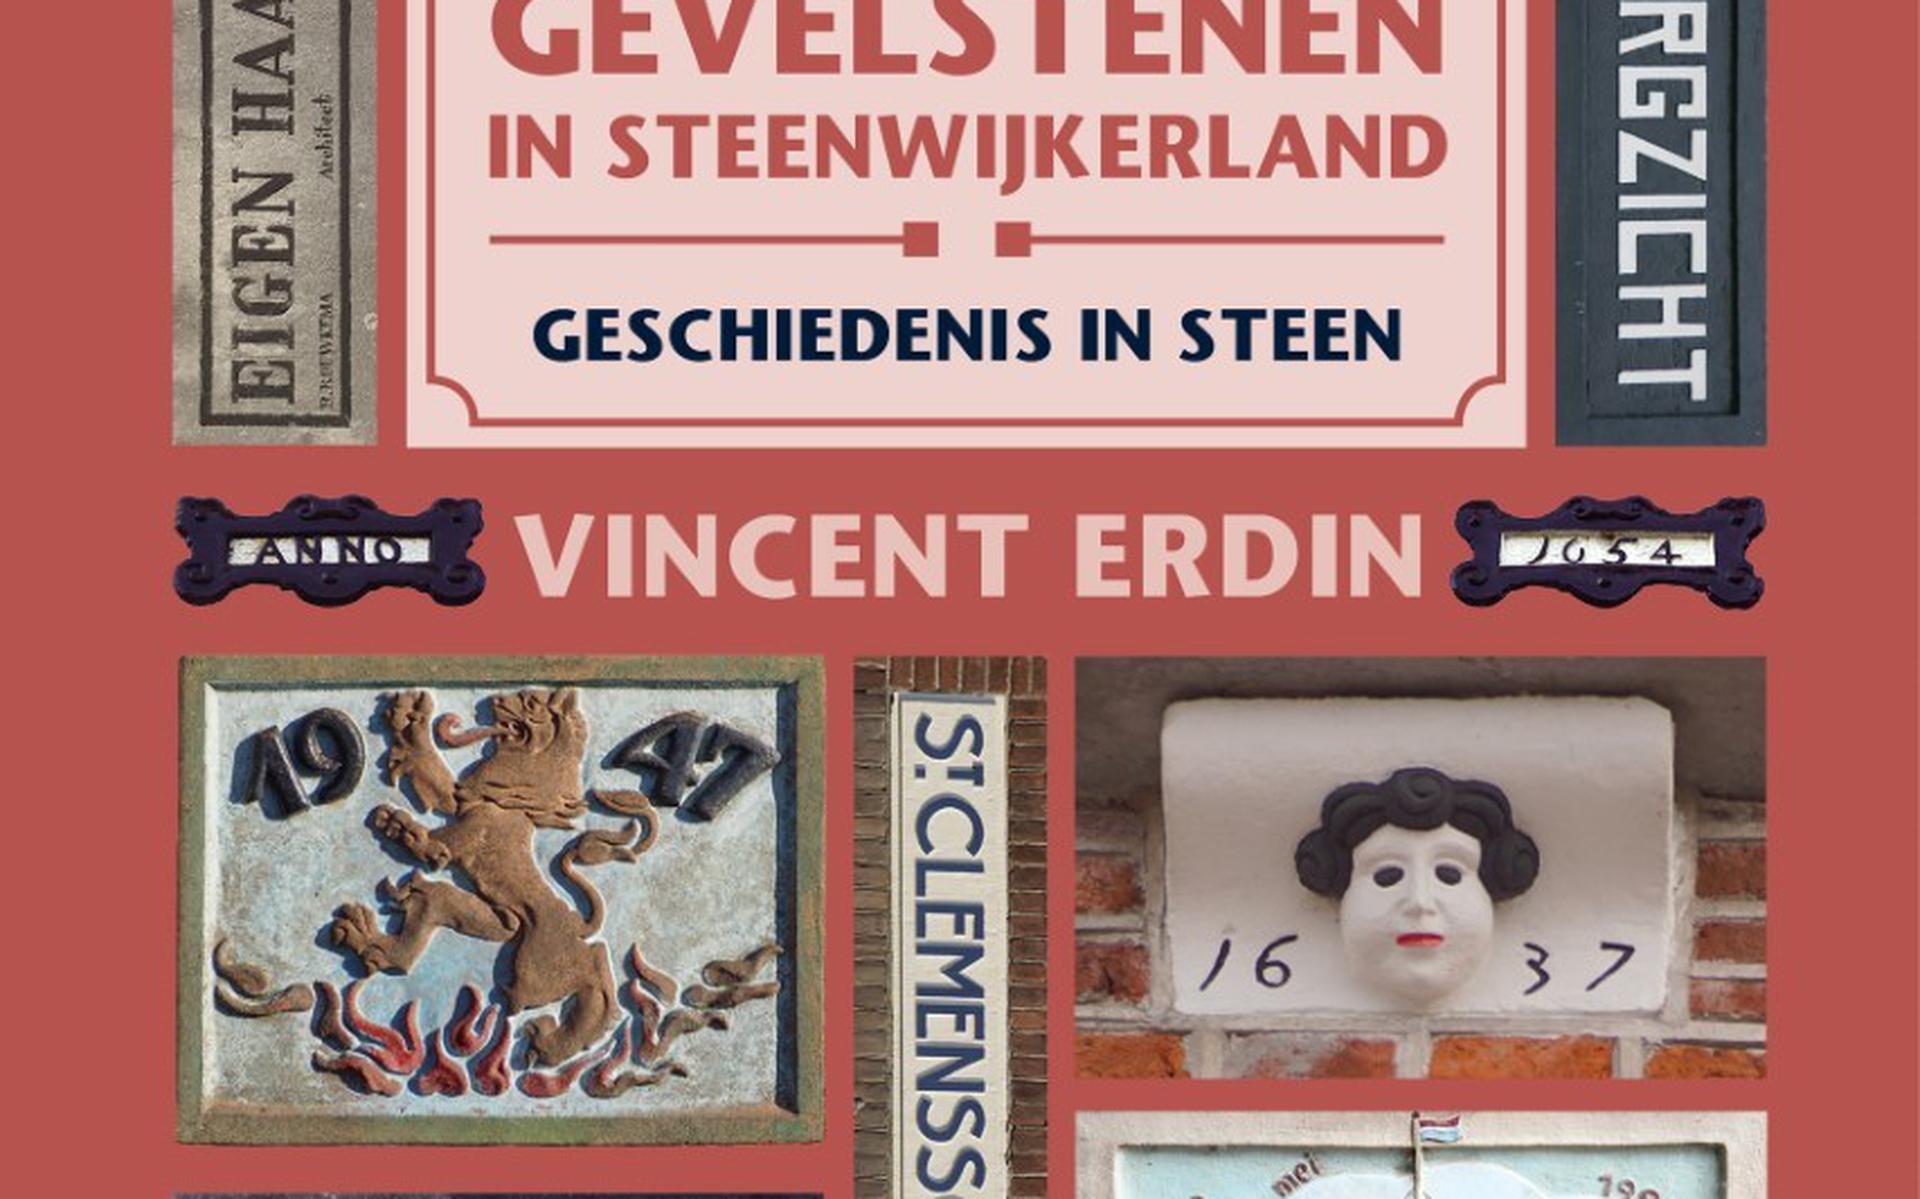 Het boek Gevelstenen in Steenwijkerland, geschiedenis in Steen door Vincent Erdin, verschijnt in september.